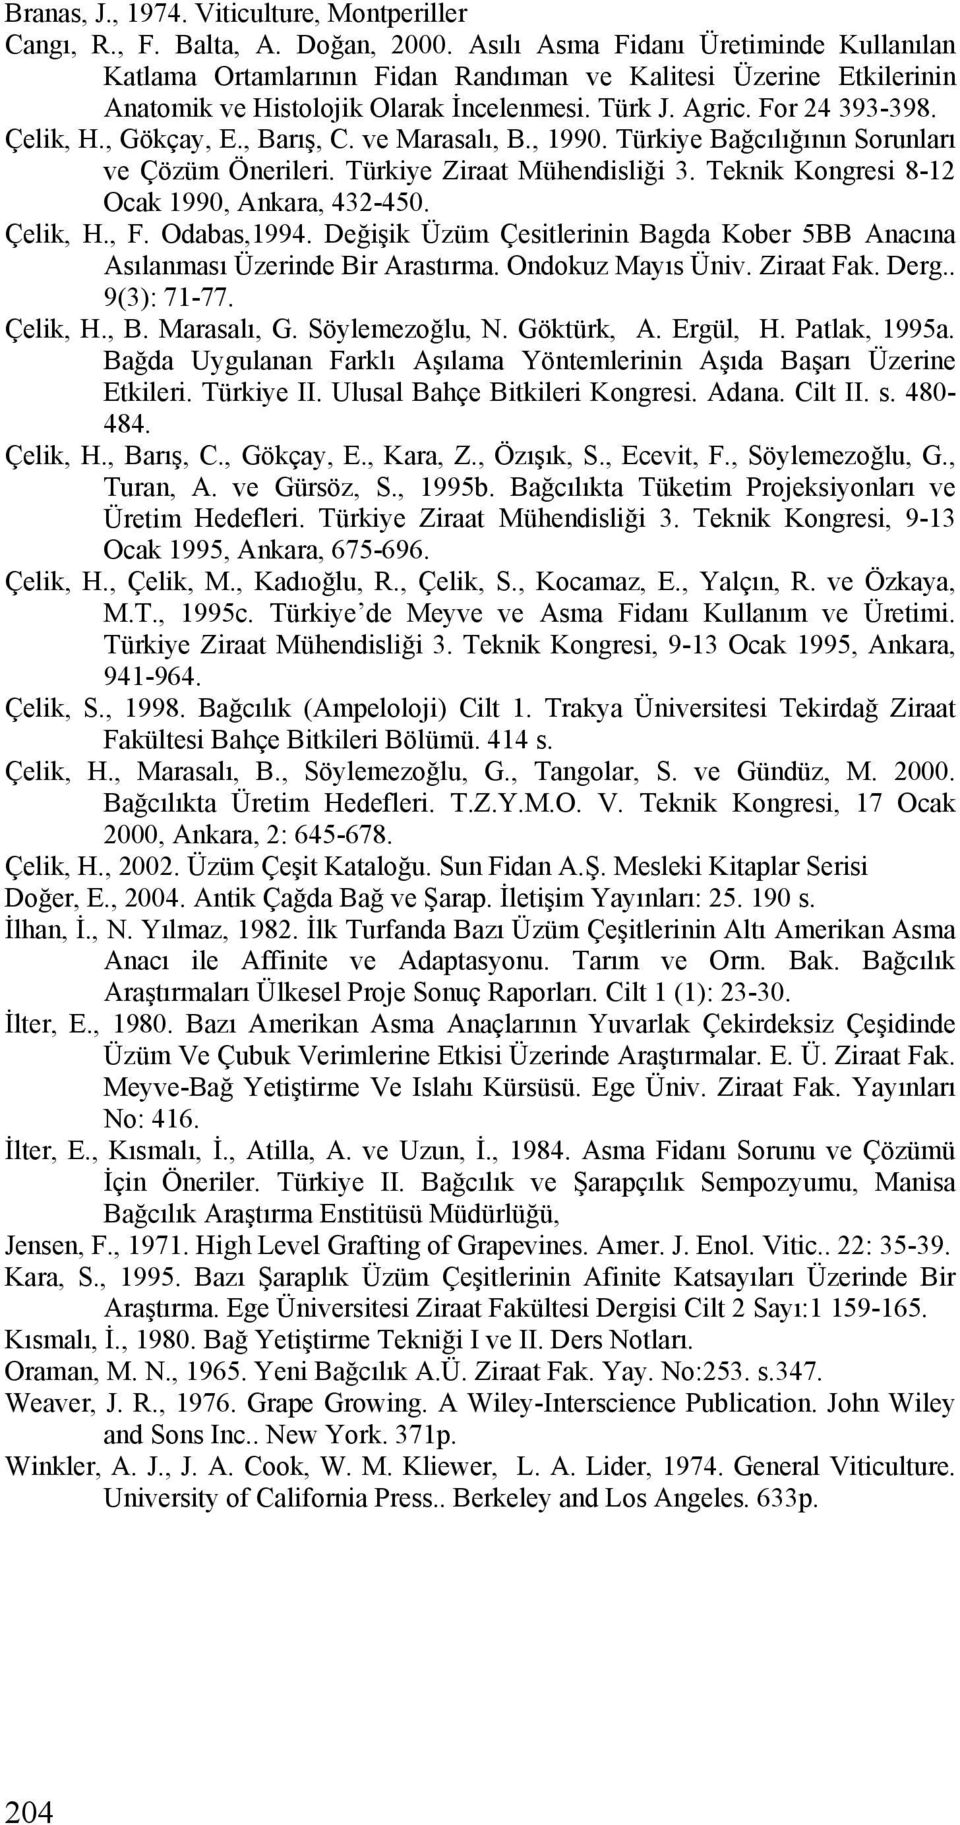 ve Mrslı, B., 1990. Türkiye Bğcılığının Sorunlrı ve Çözüm Önerileri. Türkiye Zirt Mühendisliği 3. Teknik Kongresi 8-12 Ock 1990, Ankr, 432-450. Çelik, H., F. Odbs,1994.